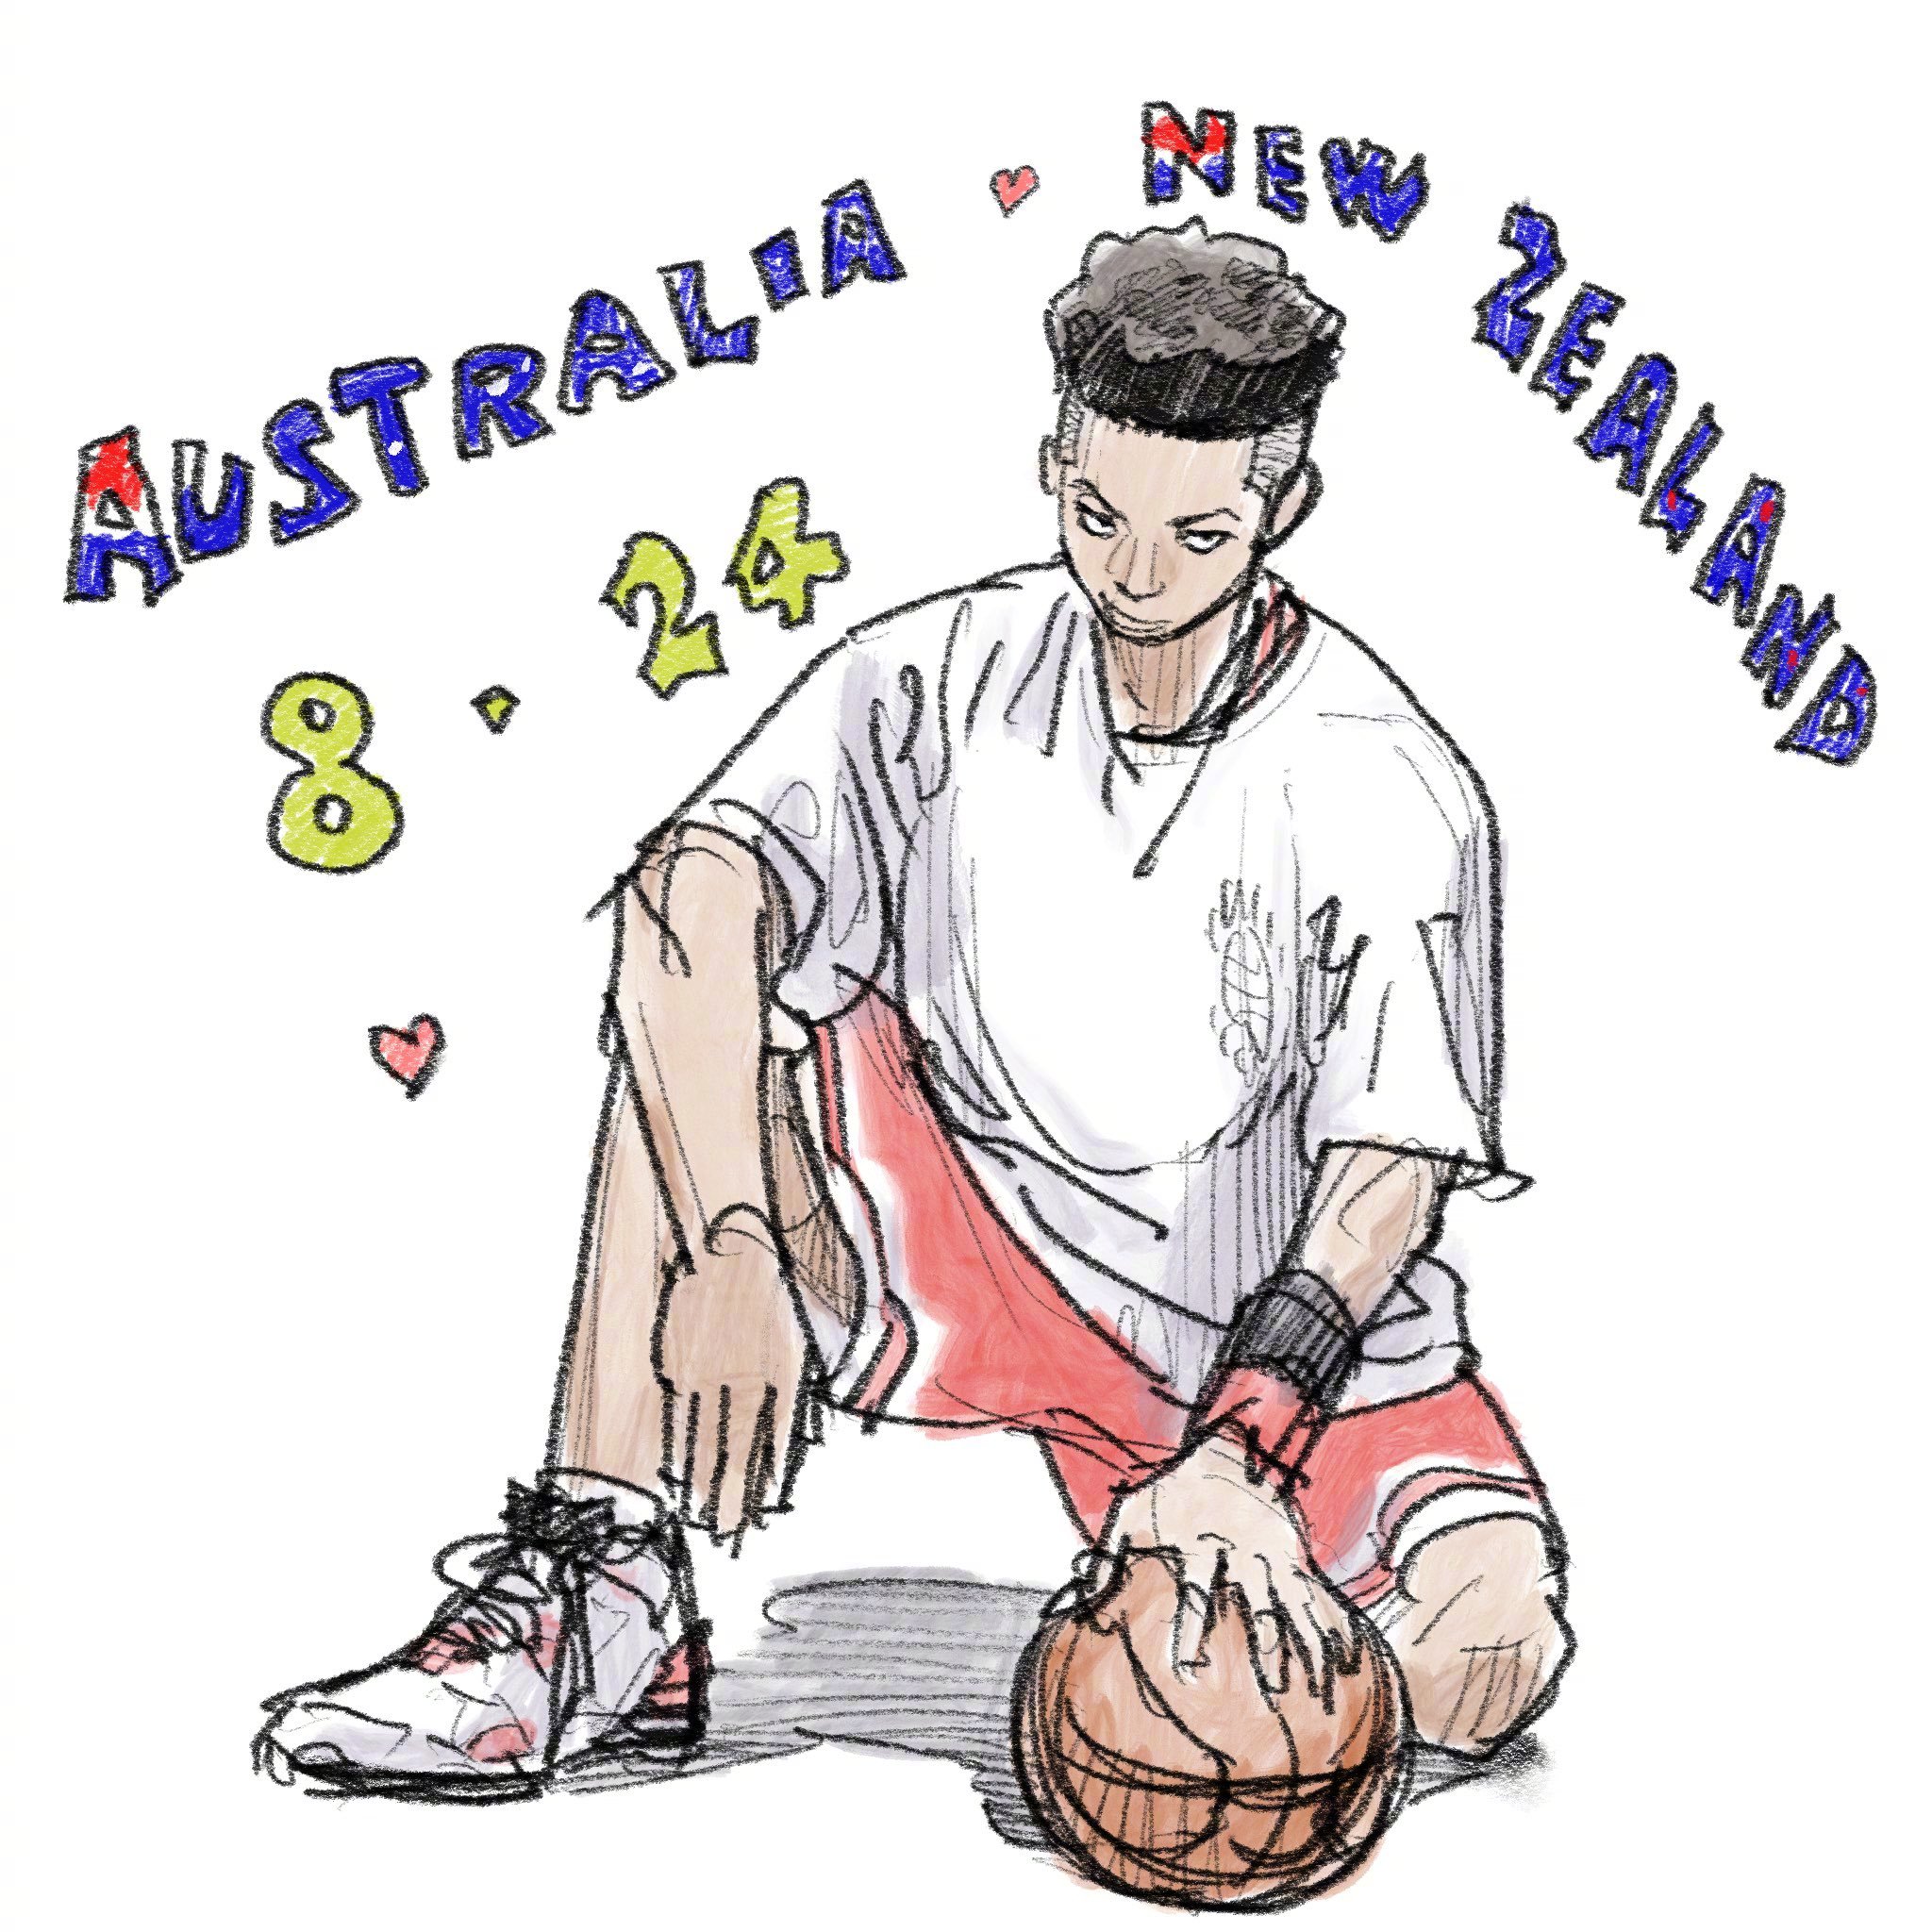 井上雄彦最新绘制《灌篮高手 The First》澳大利亚 · 新西兰上映纪念贺图